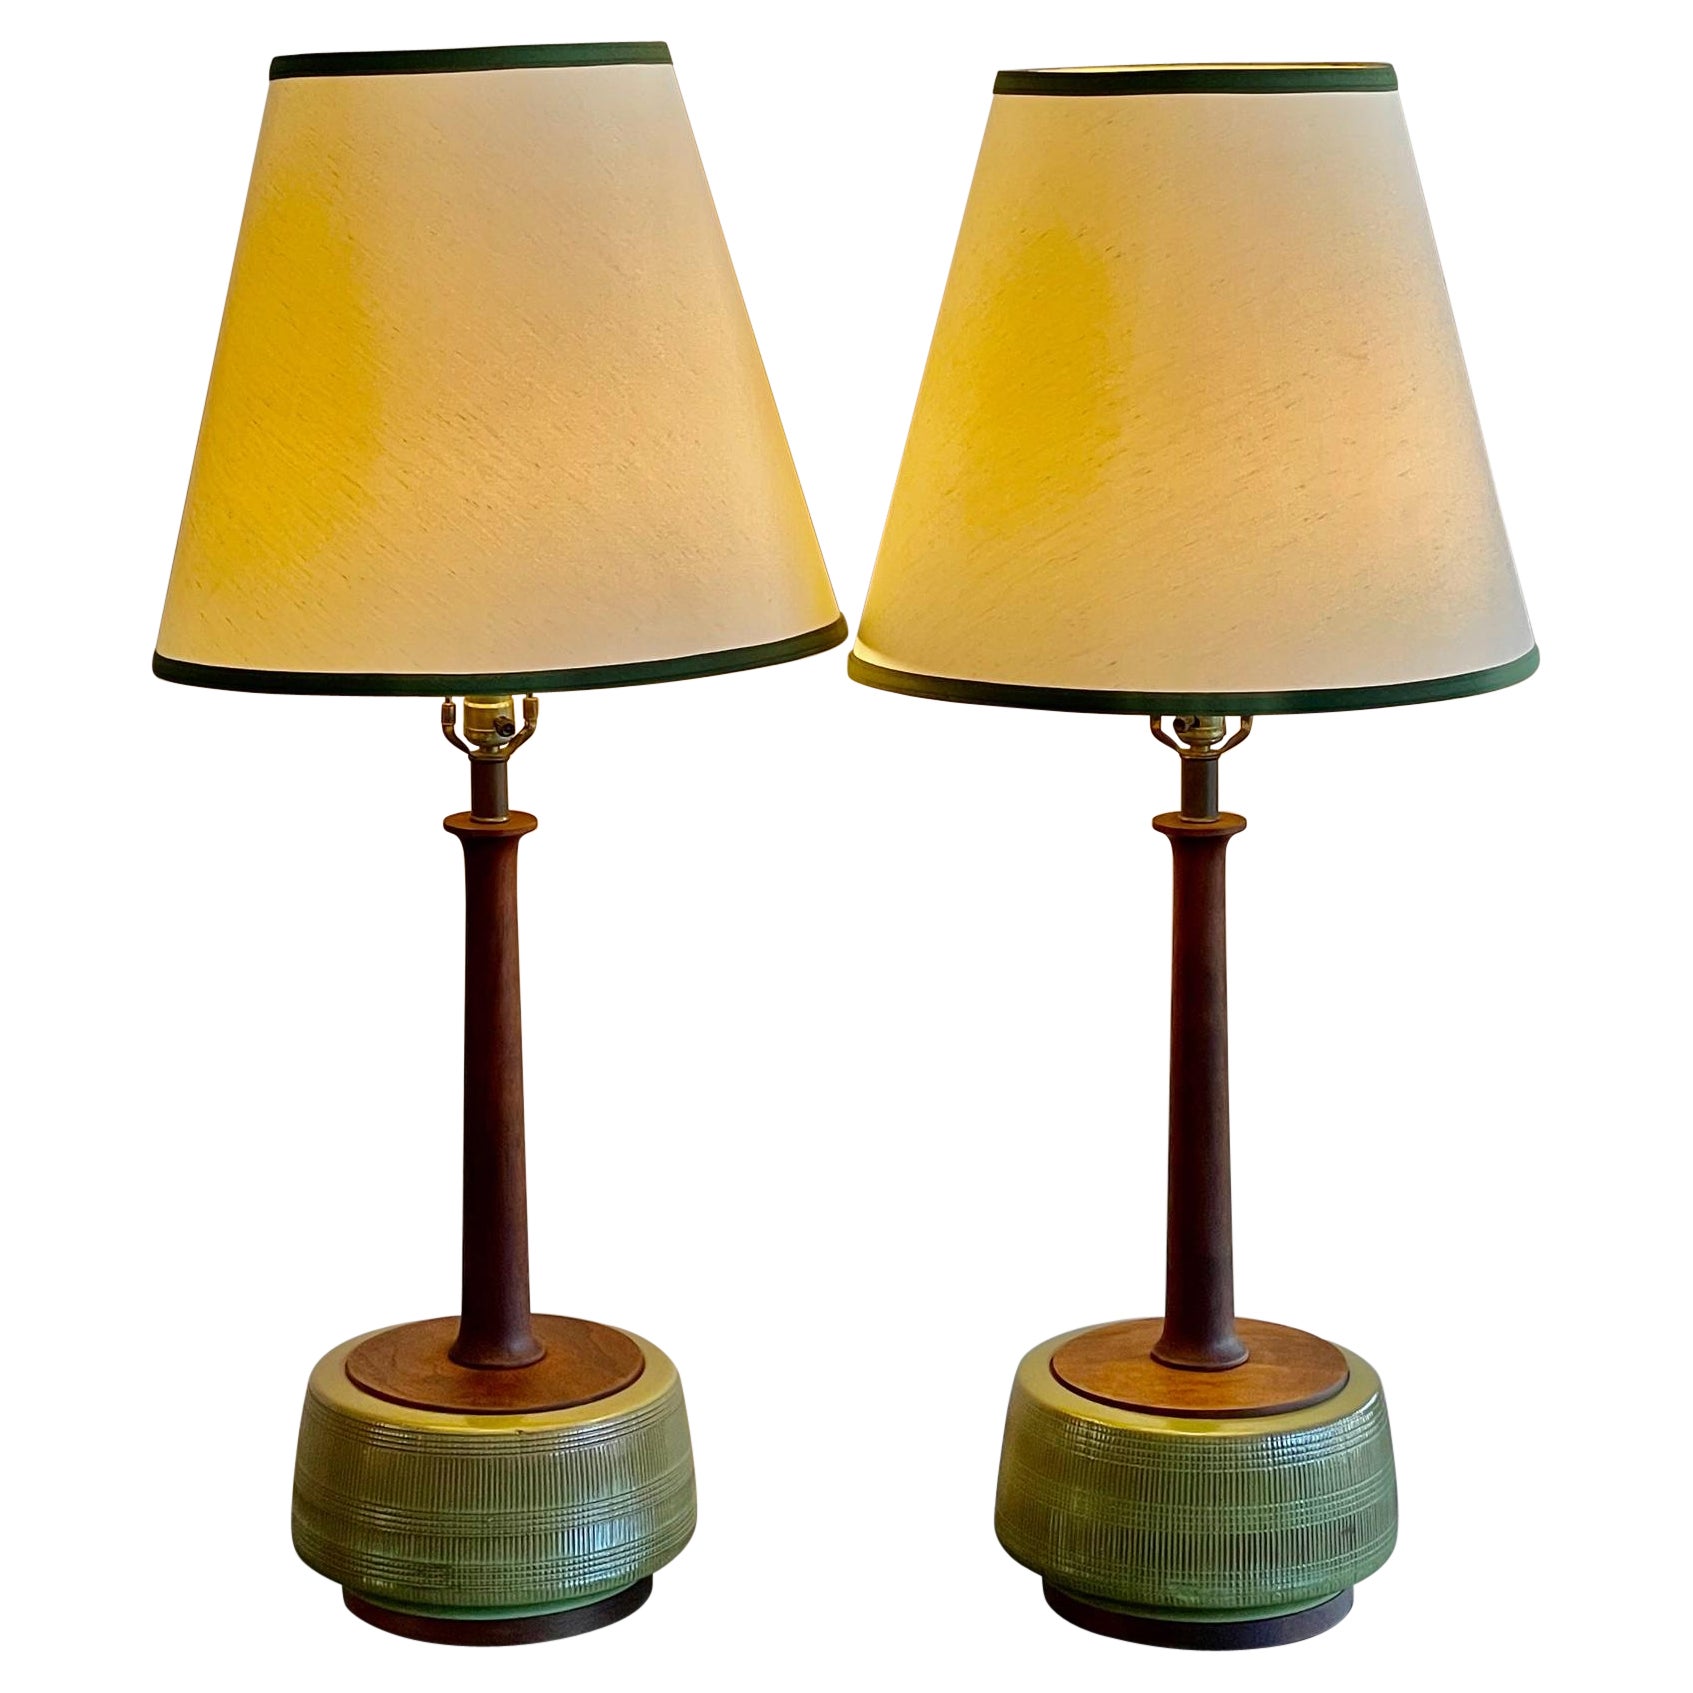 Unusual Pair of Sculptural Ceramic Lamps